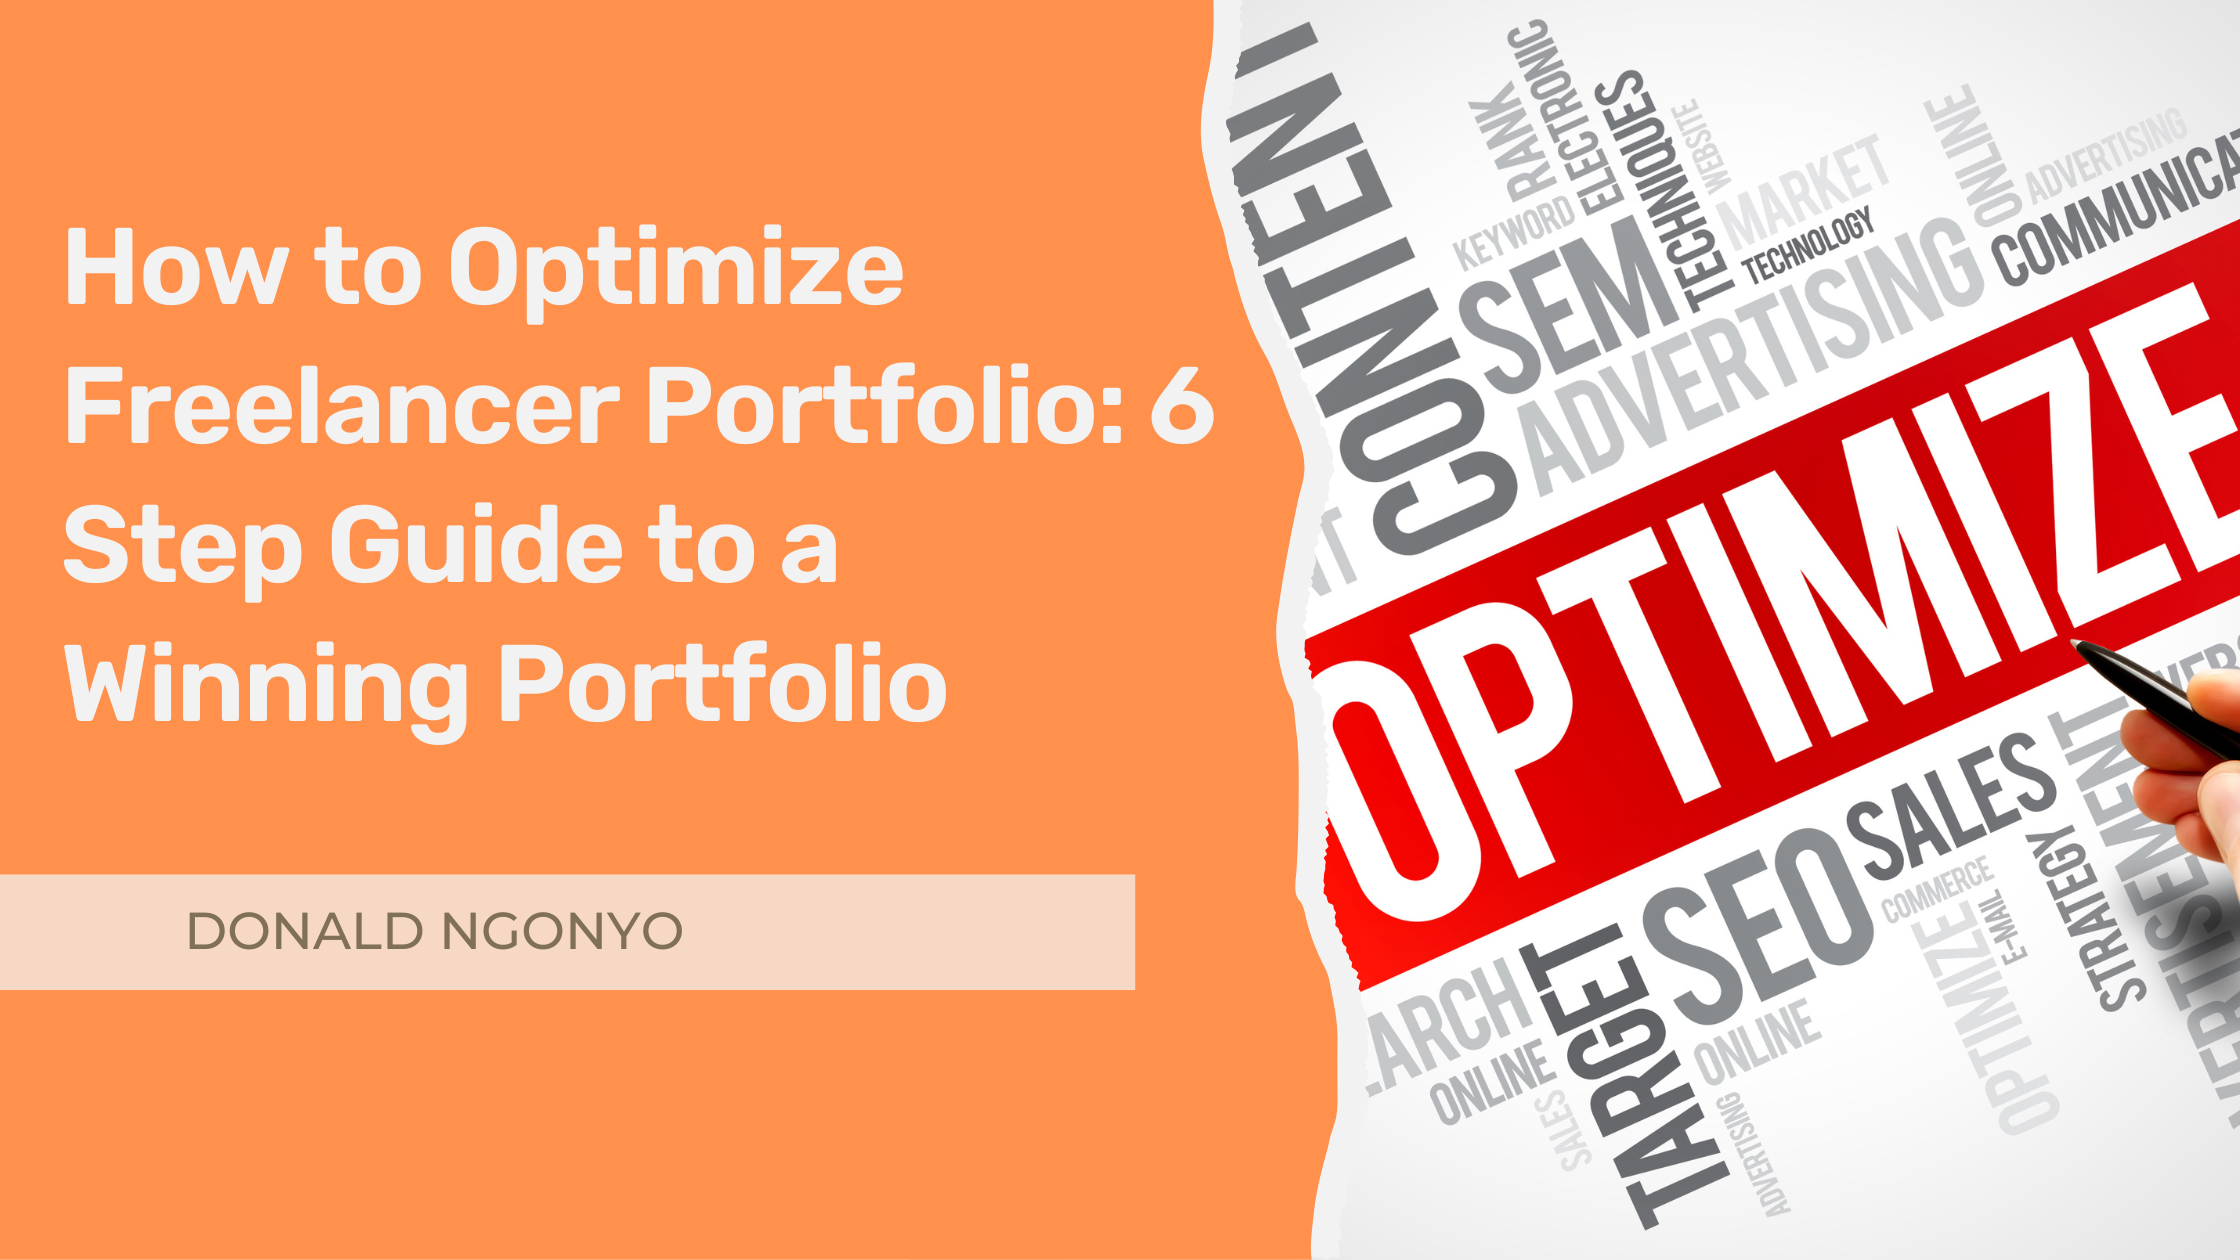 How to Optimize Freelancer Portfolio: 6 Step Guide to a Winning Portfolio